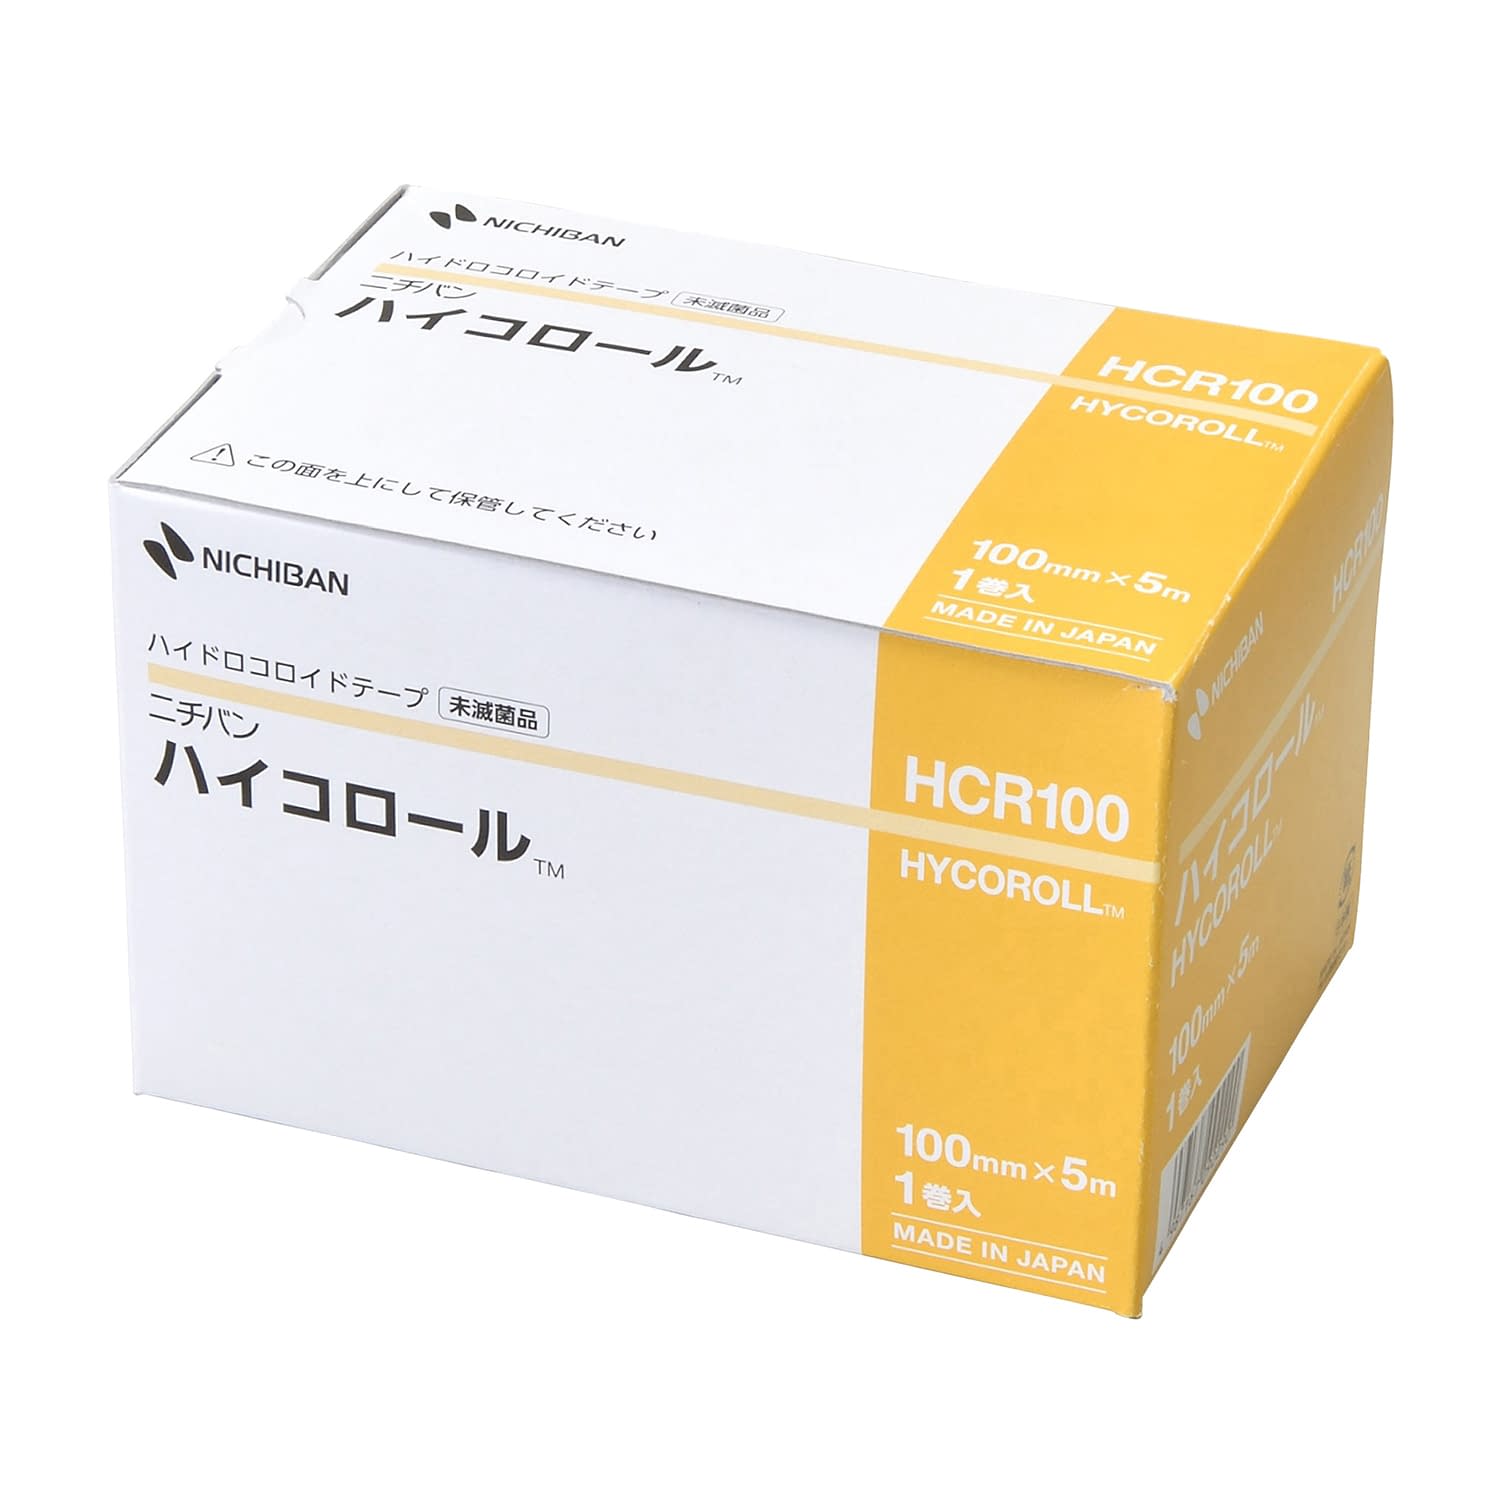 ハイドロコロイドテープ ハイコロールHCR100(100MMX5M)HCR100(100MMX5M)(24-8585-02)【ニチバン】(販売単位:1)